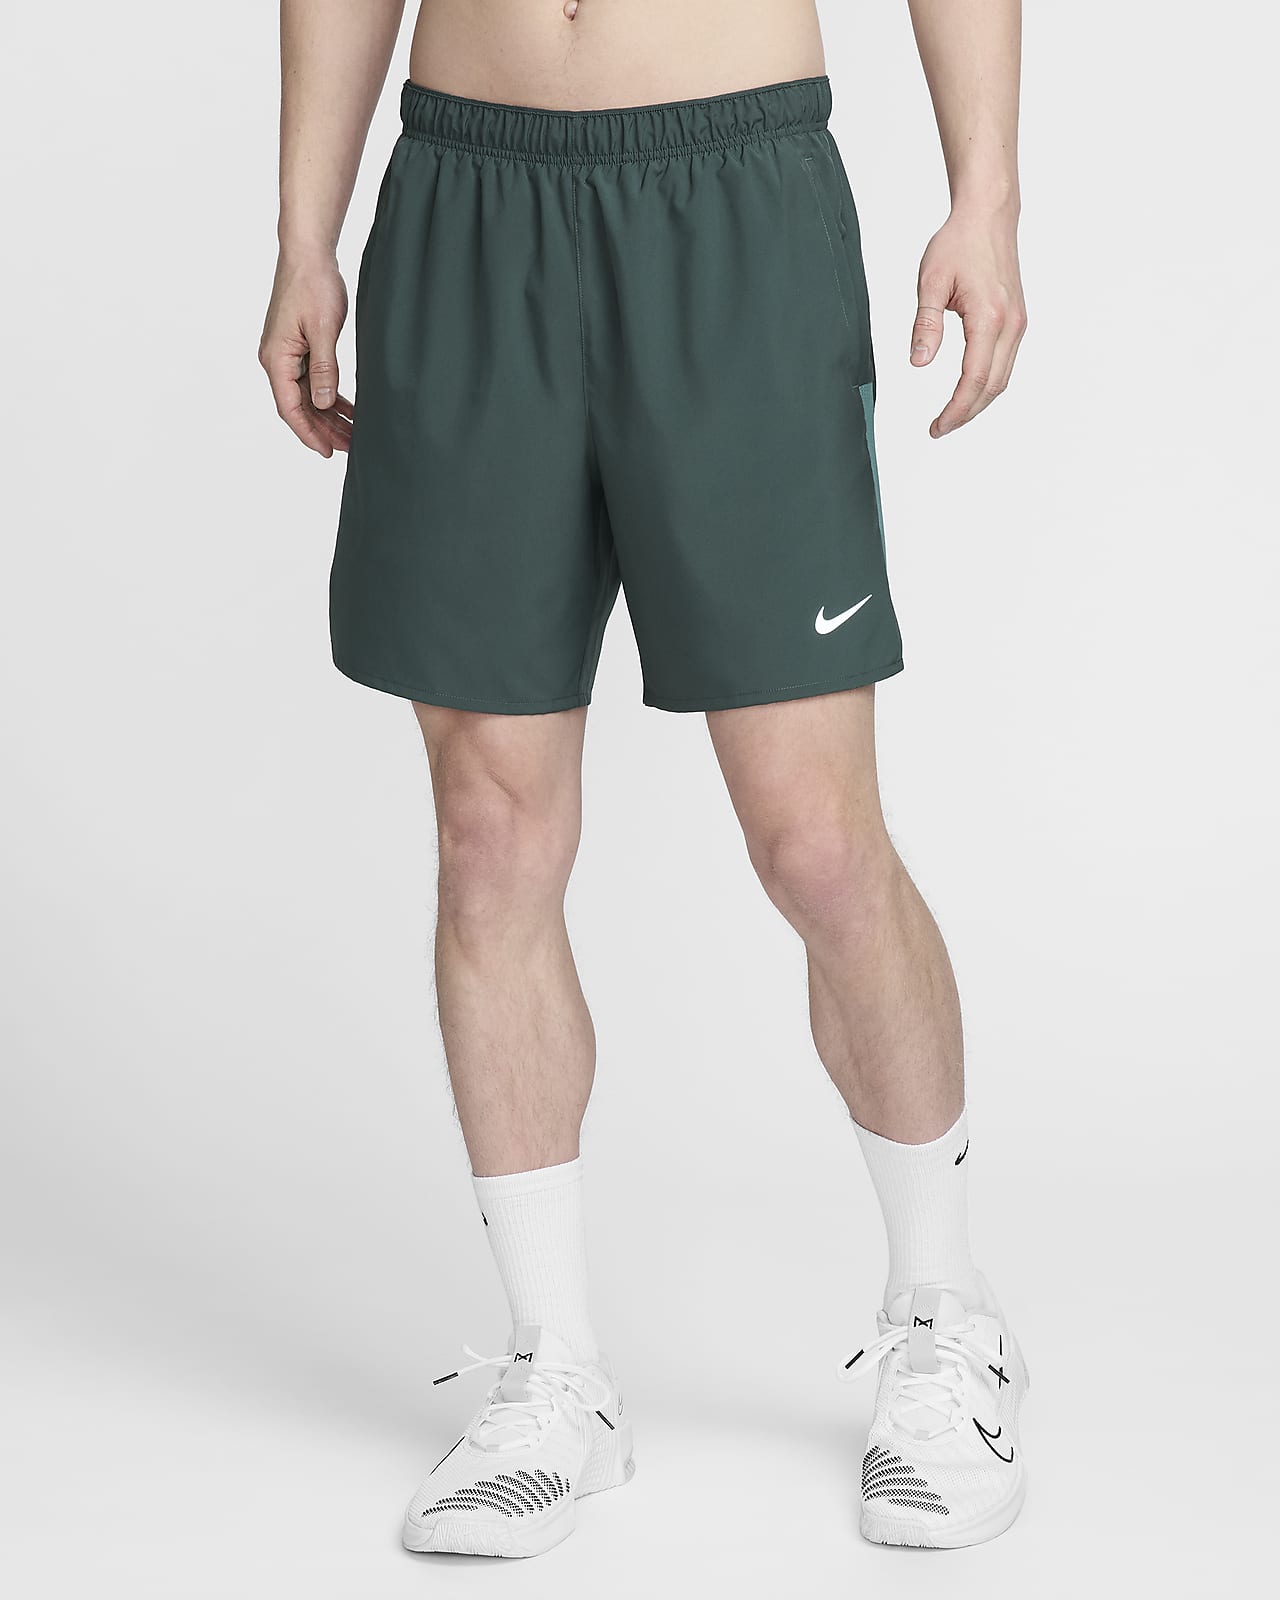 Nike Challenger Men's 2-in-1 Running Shorts